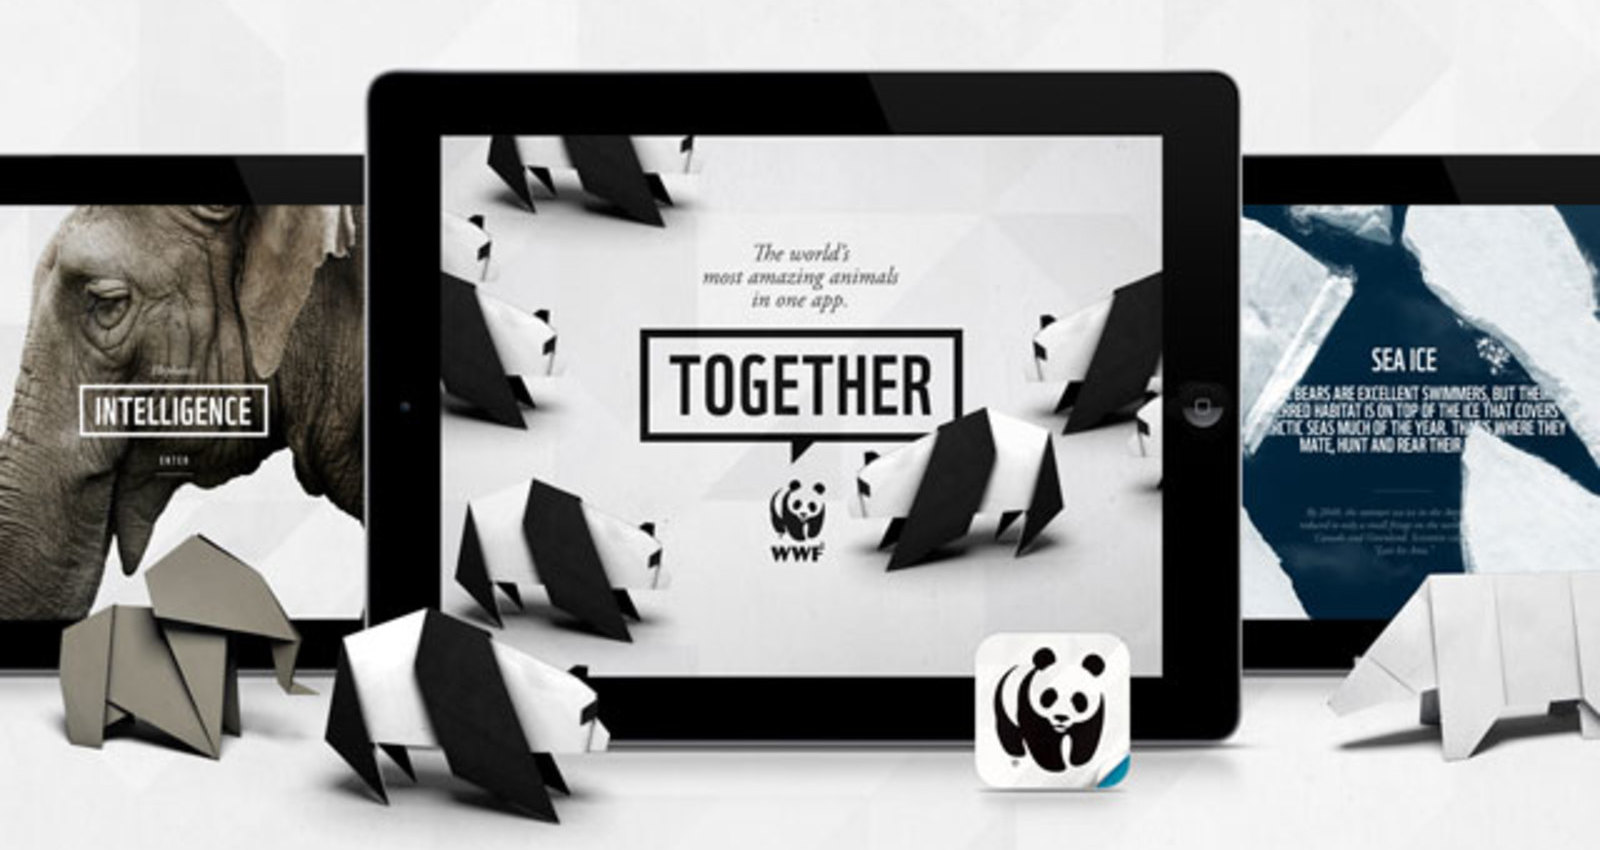 WWF Together App